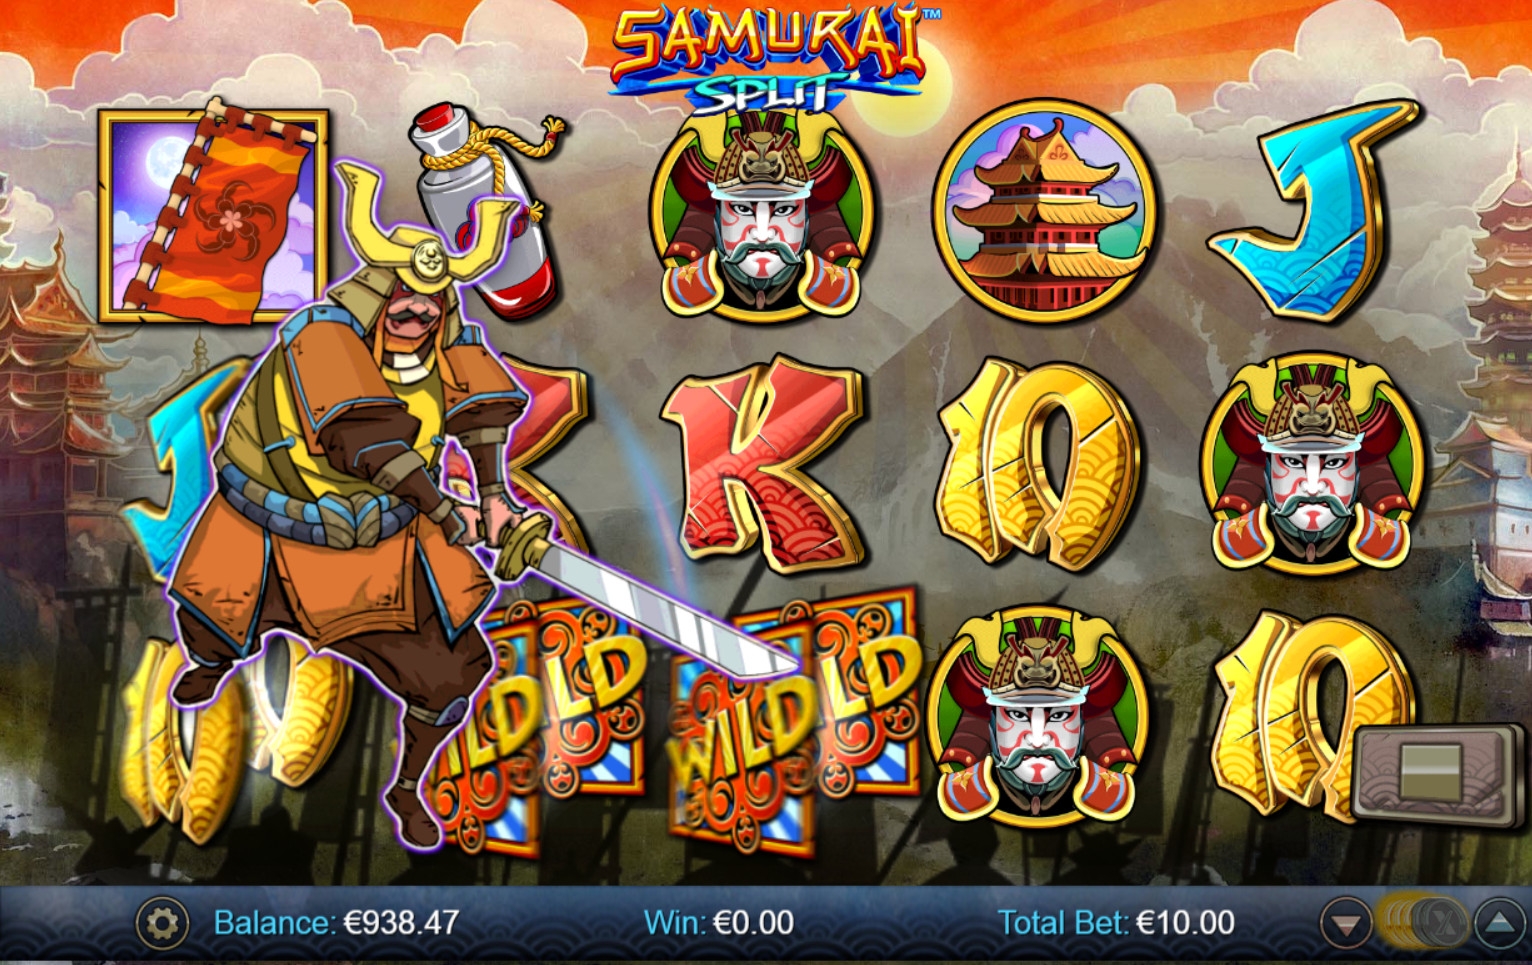 Samurai Split (Samurai Split) from category Slots